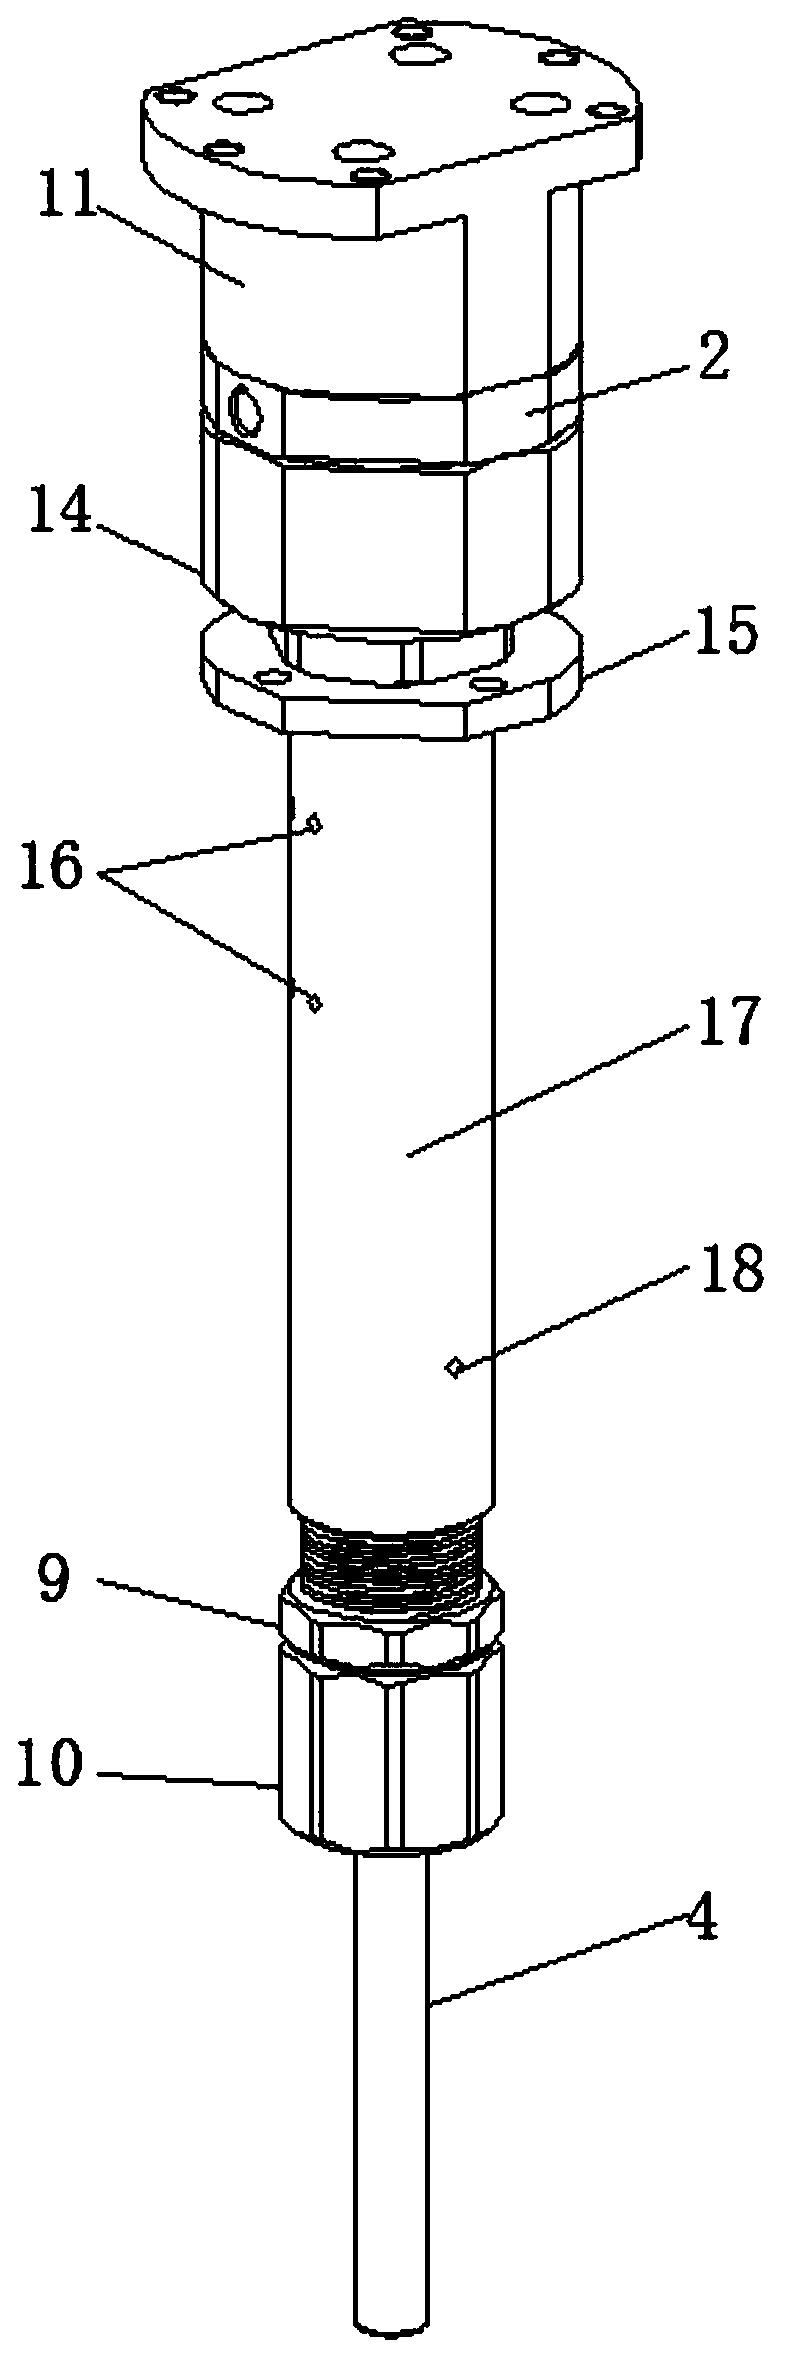 Pneumatic hammer for removing cinder ladle